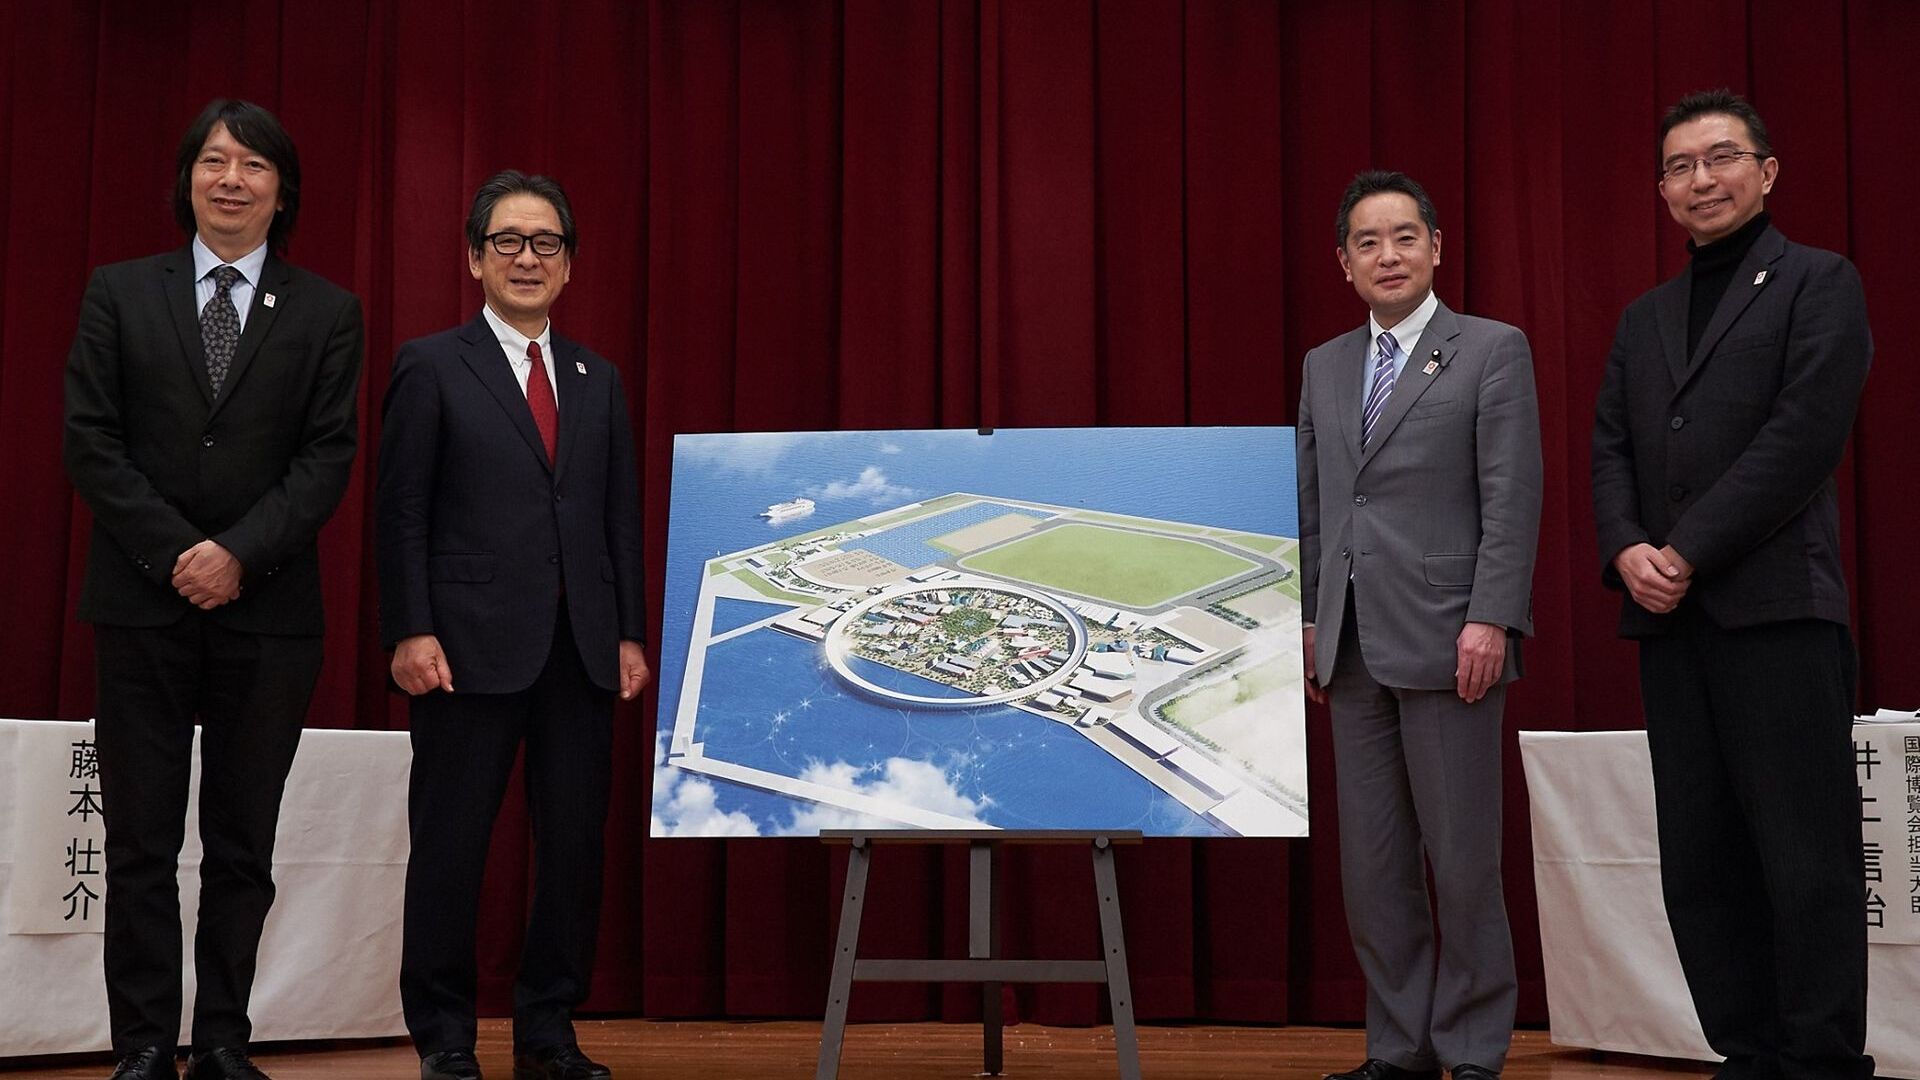 La cerimonia di presentazione dell'area destinata ad accogliere l'Esposizione Universale di Osaka (Giappone) del 2025